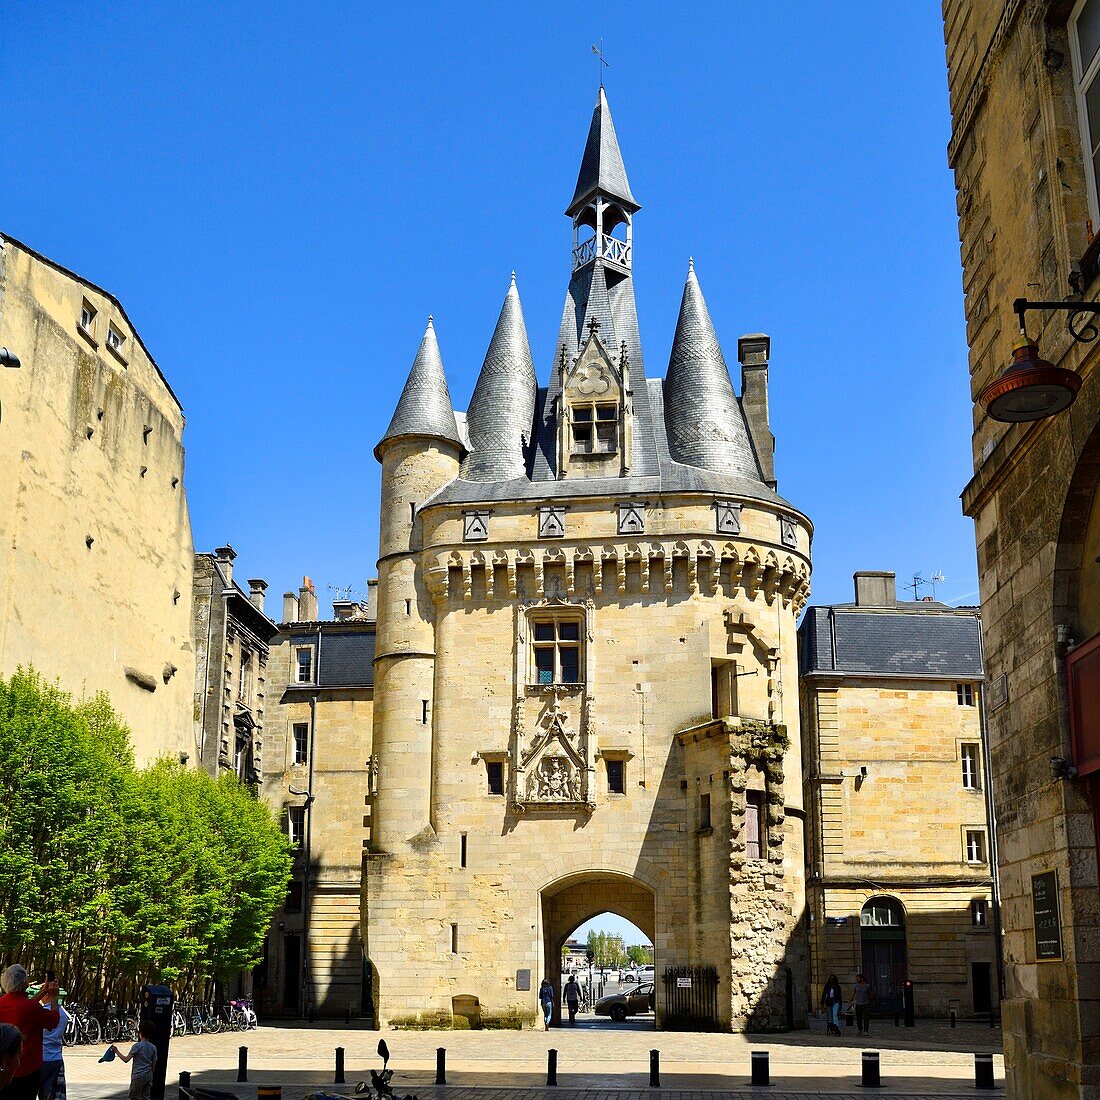 Frankreich,Gironde,Bordeaux,von der UNESCO zum Weltkulturerbe ernanntes Stadtviertel Saint-Pierre,gotisches Cailhau-Tor aus dem 15.